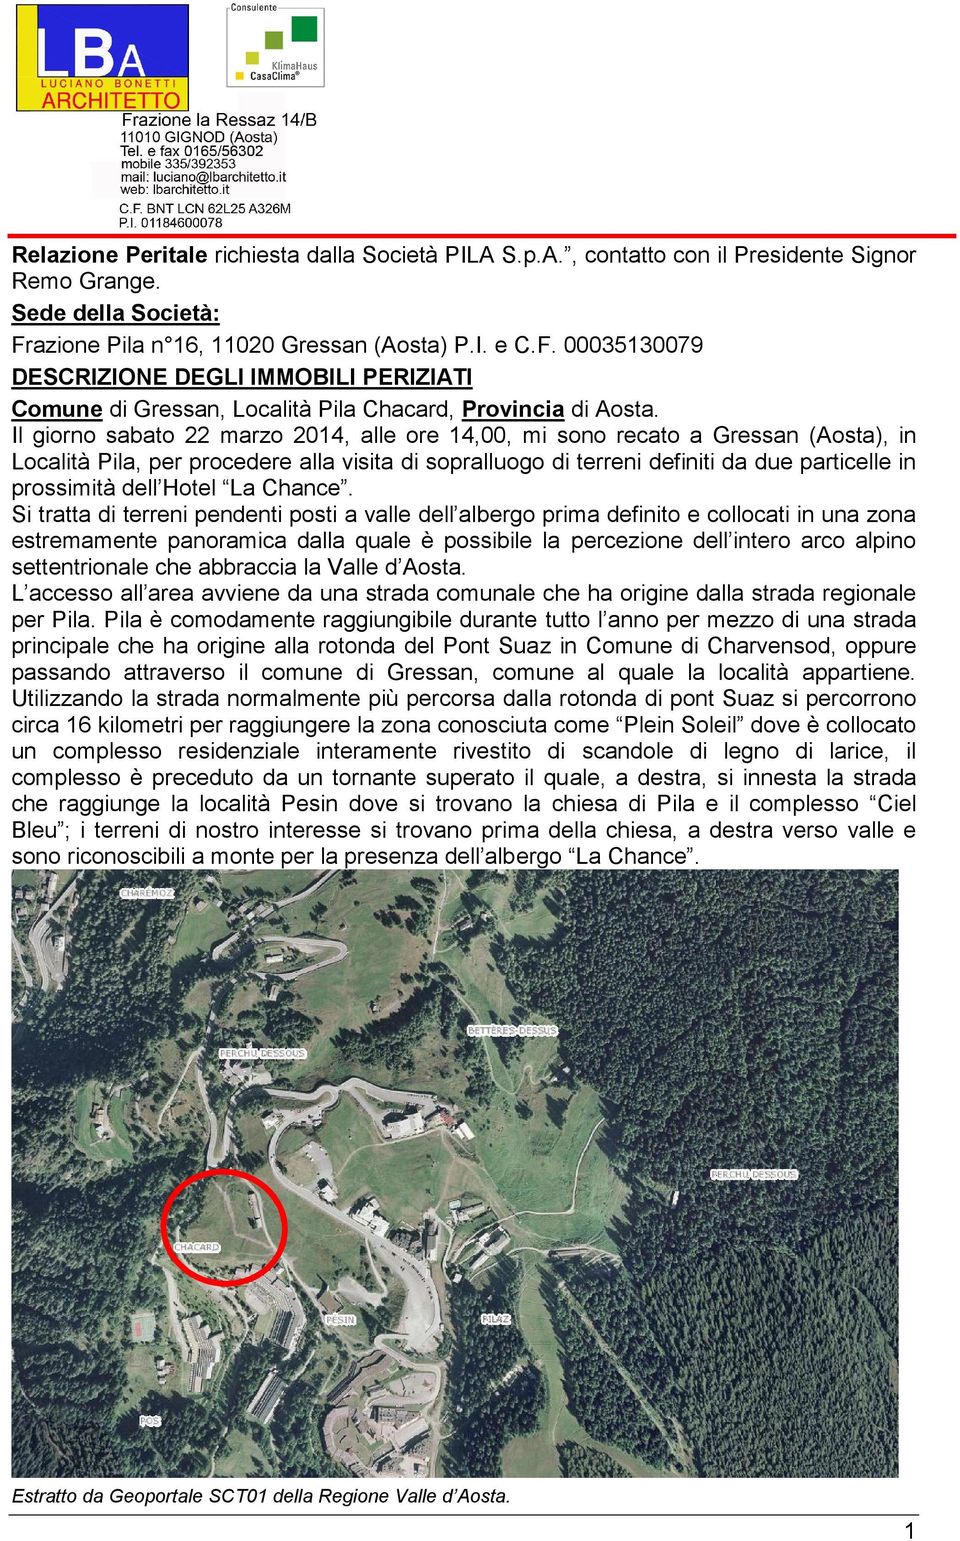 Il giorno sabato 22 marzo 2014, alle ore 14,00, mi sono recato a Gressan (Aosta), in Località Pila, per procedere alla visita di sopralluogo di terreni definiti da due particelle in prossimità dell